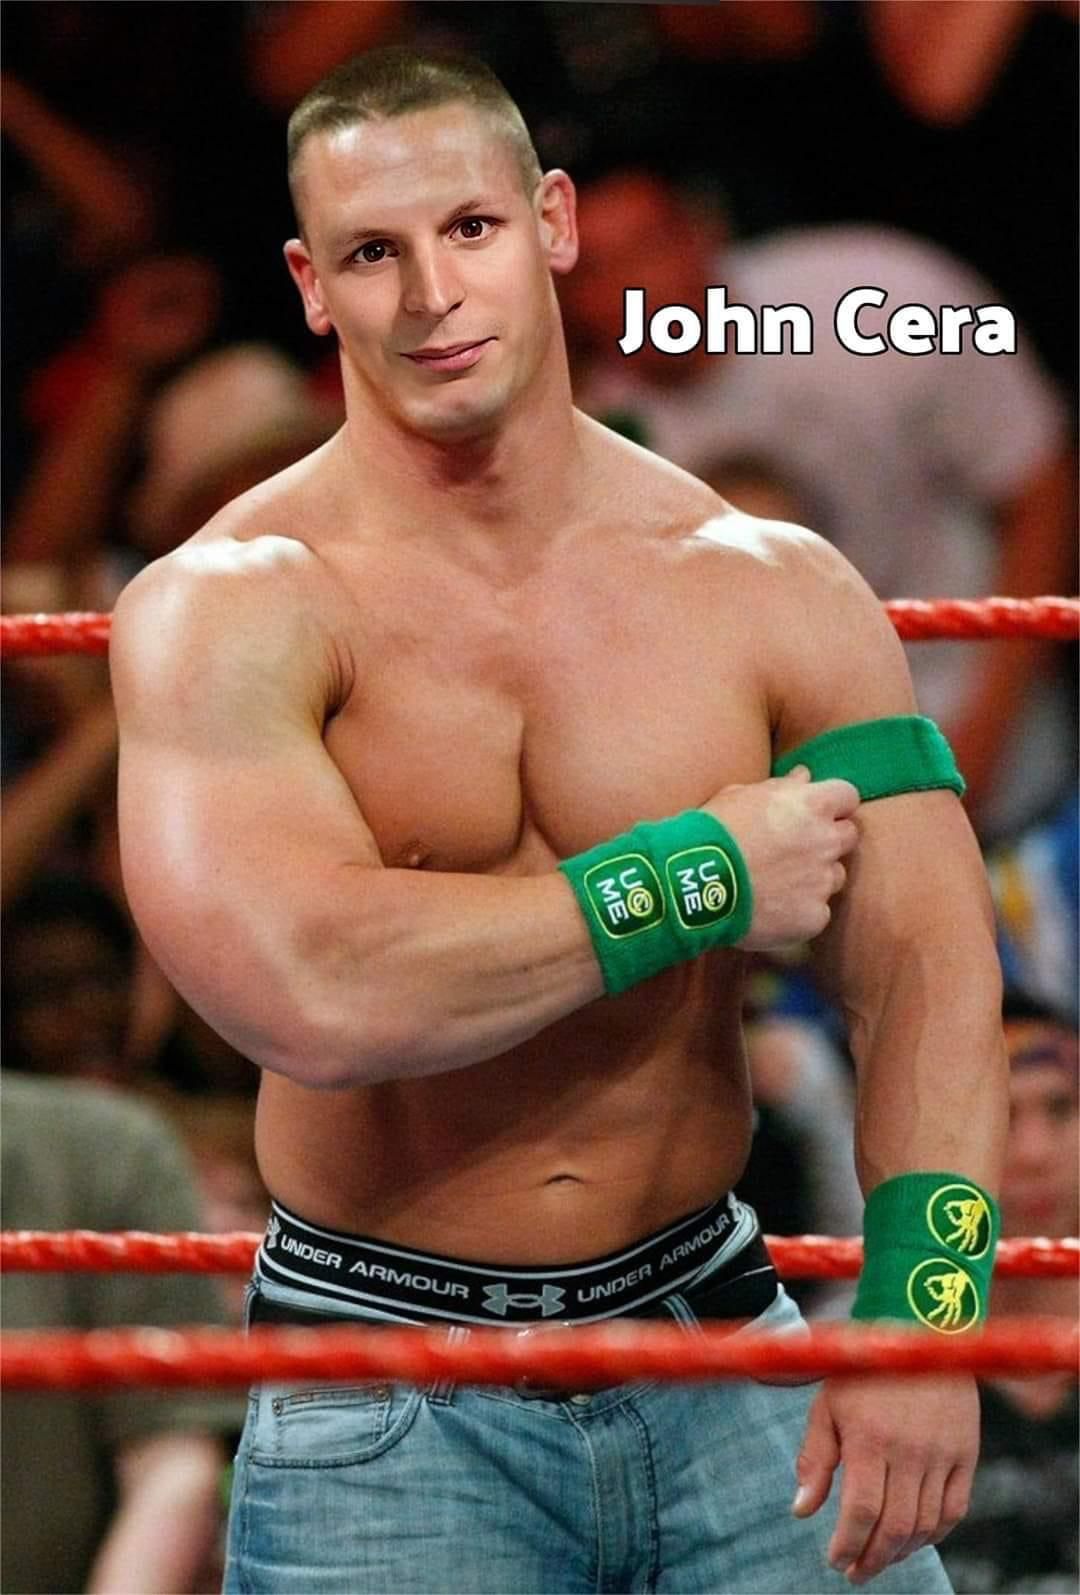 John Cera